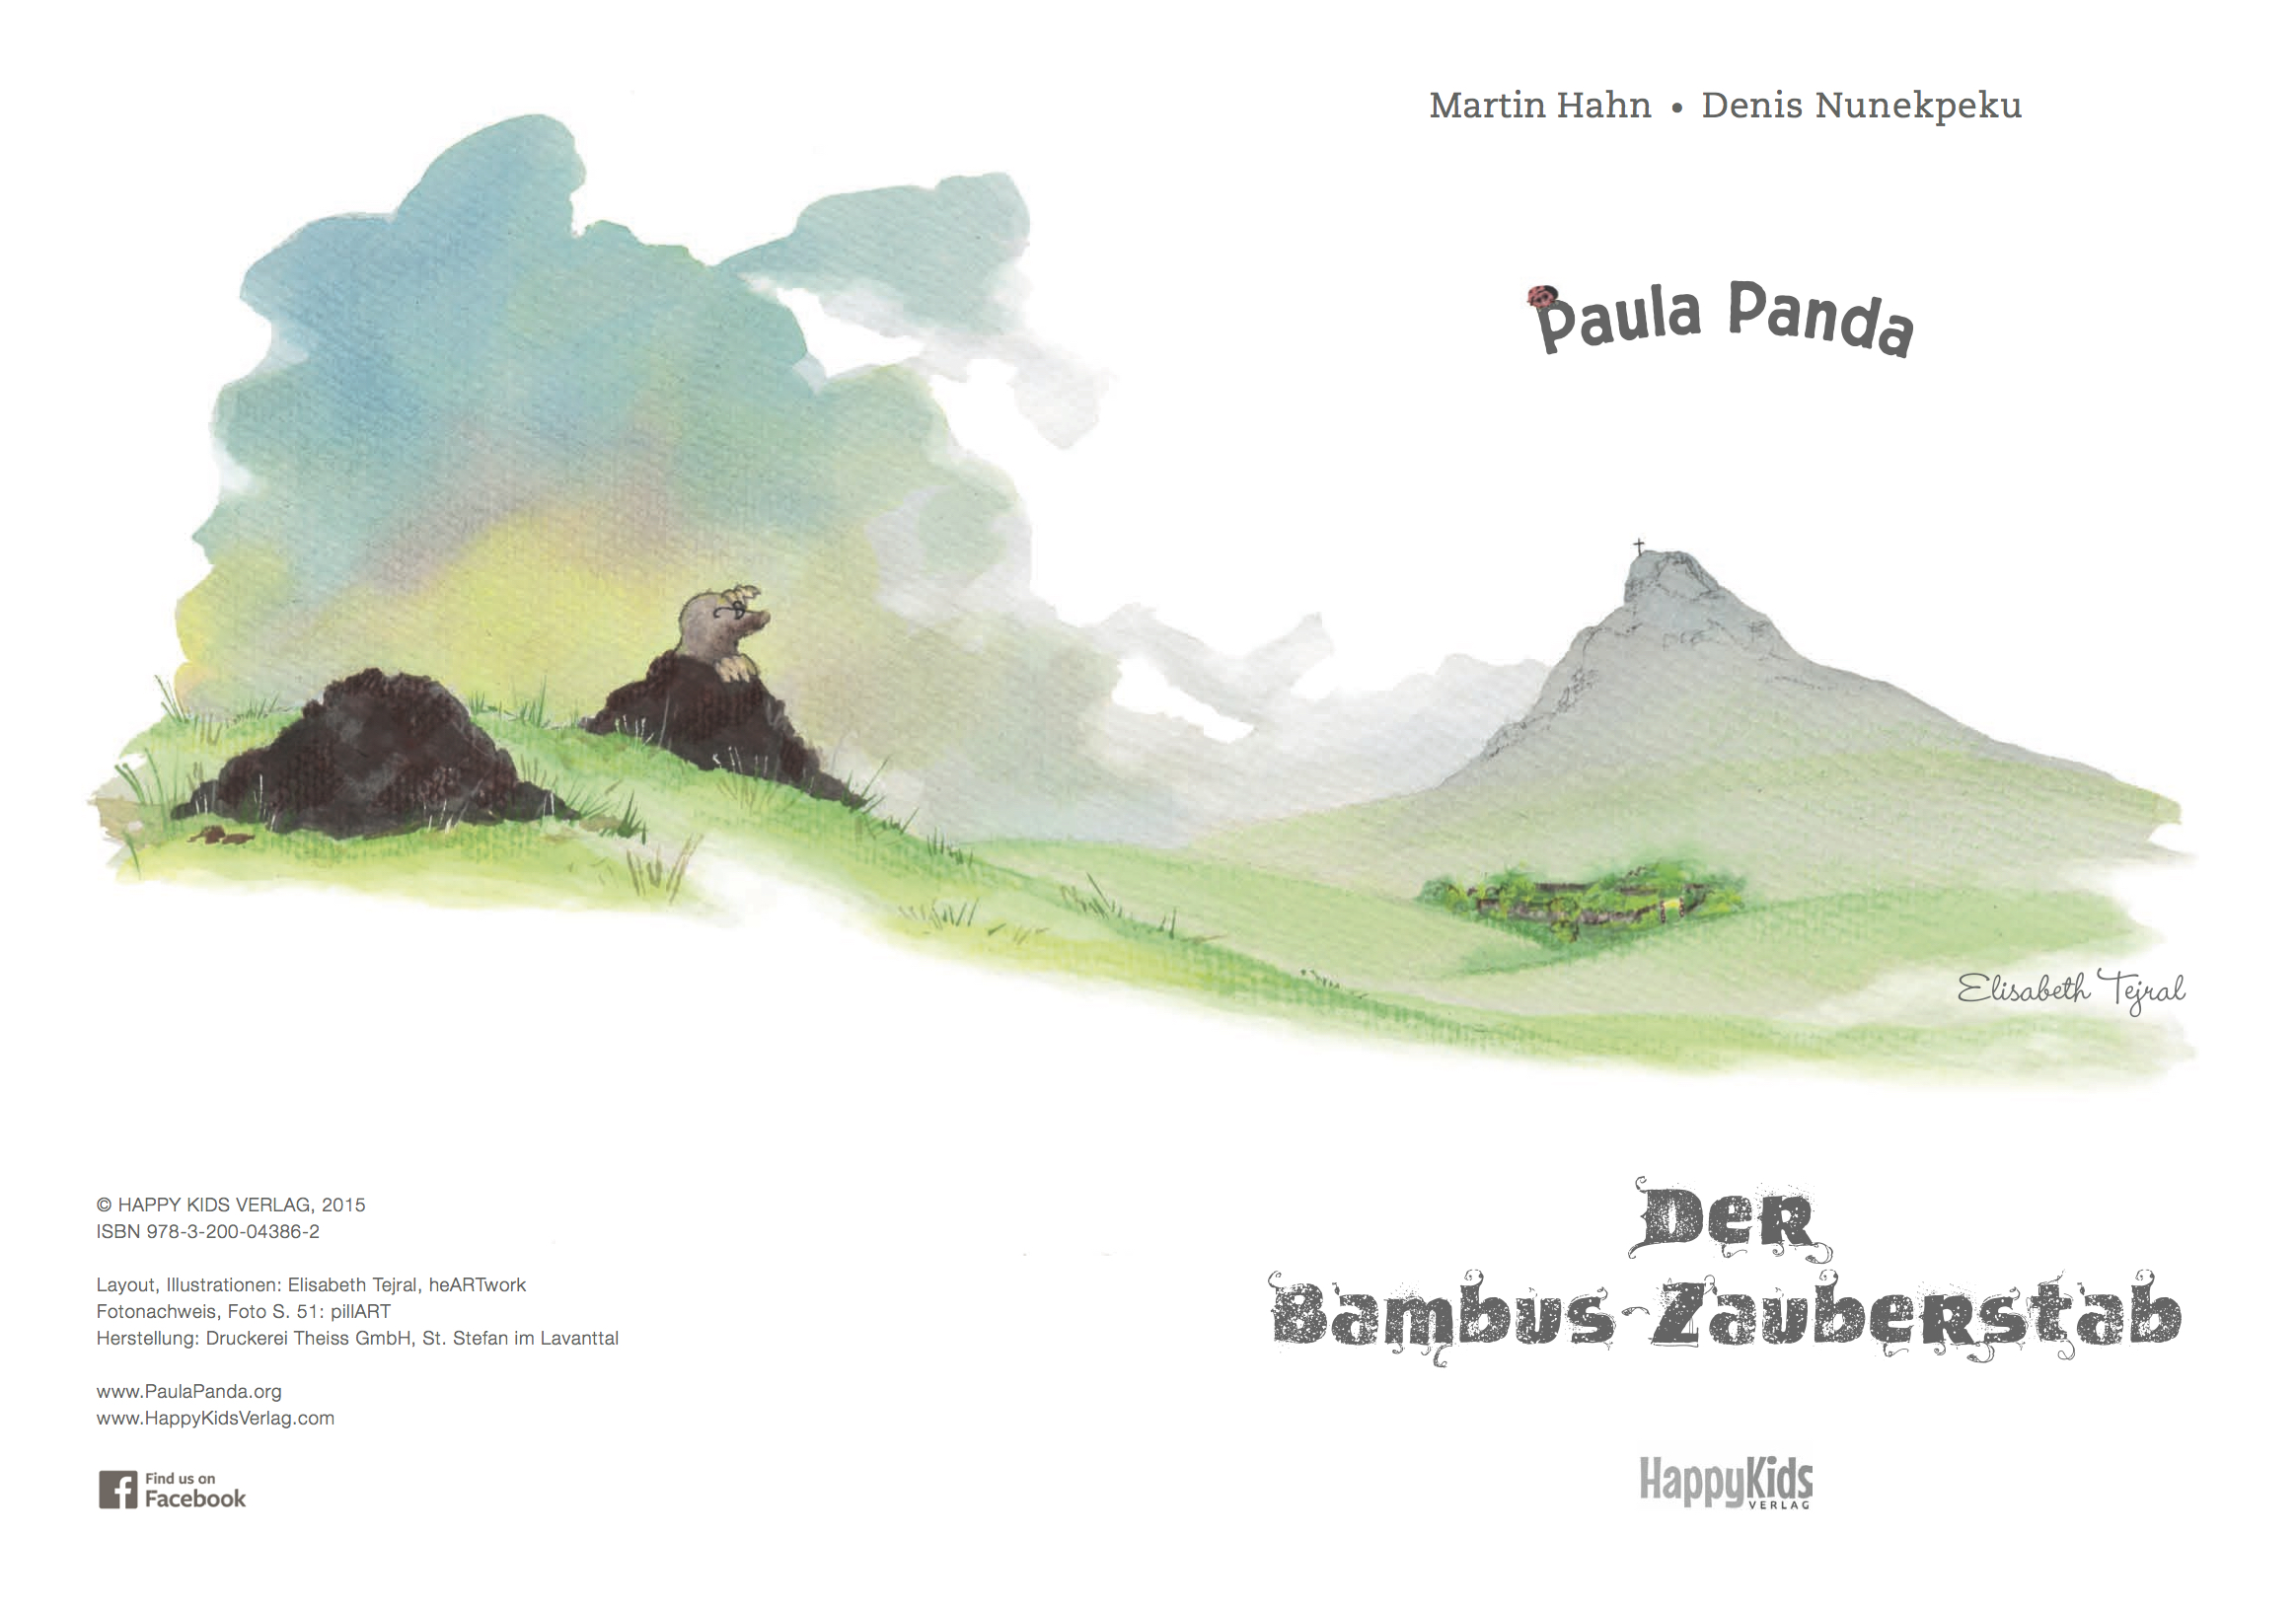 Paula Panda - Der Bambus-Zauberstab - Seite 2 & 3 - ©PaulaPanda.org